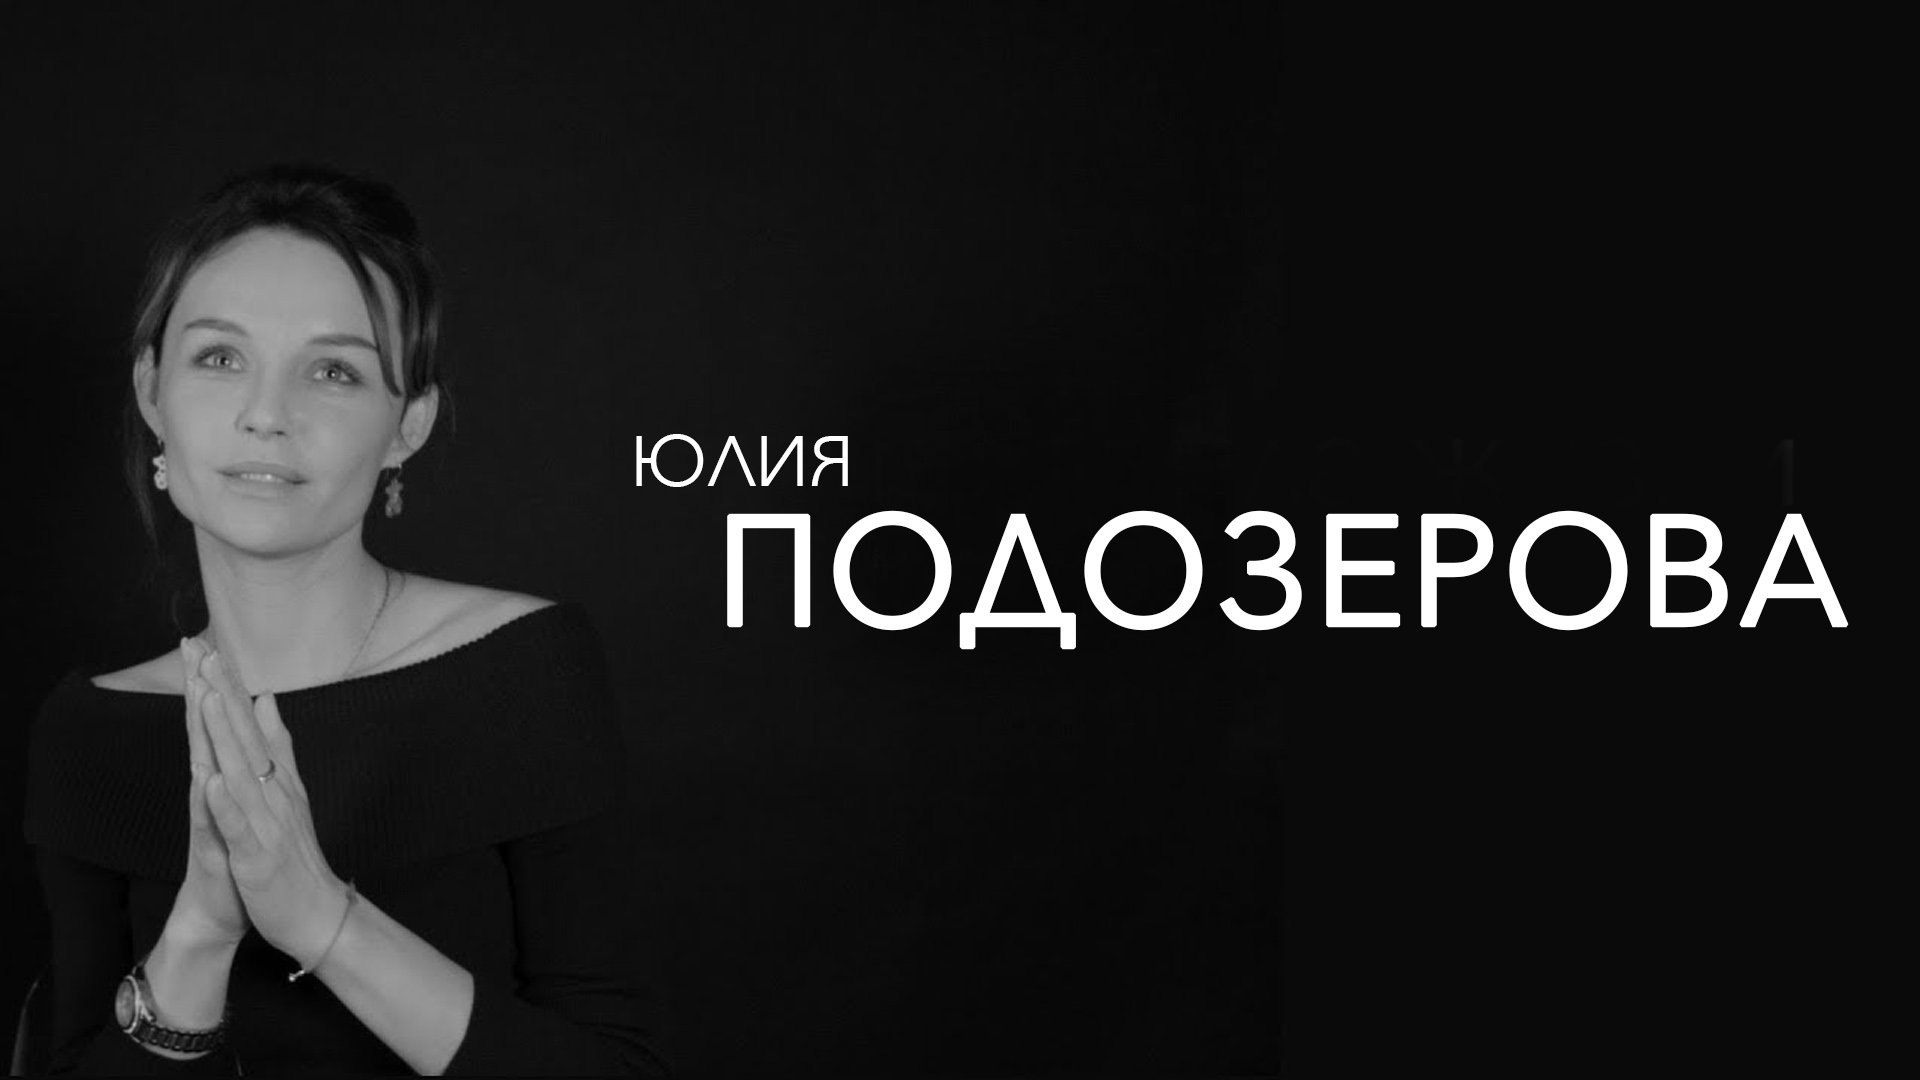 Юлия Подозерова интервью